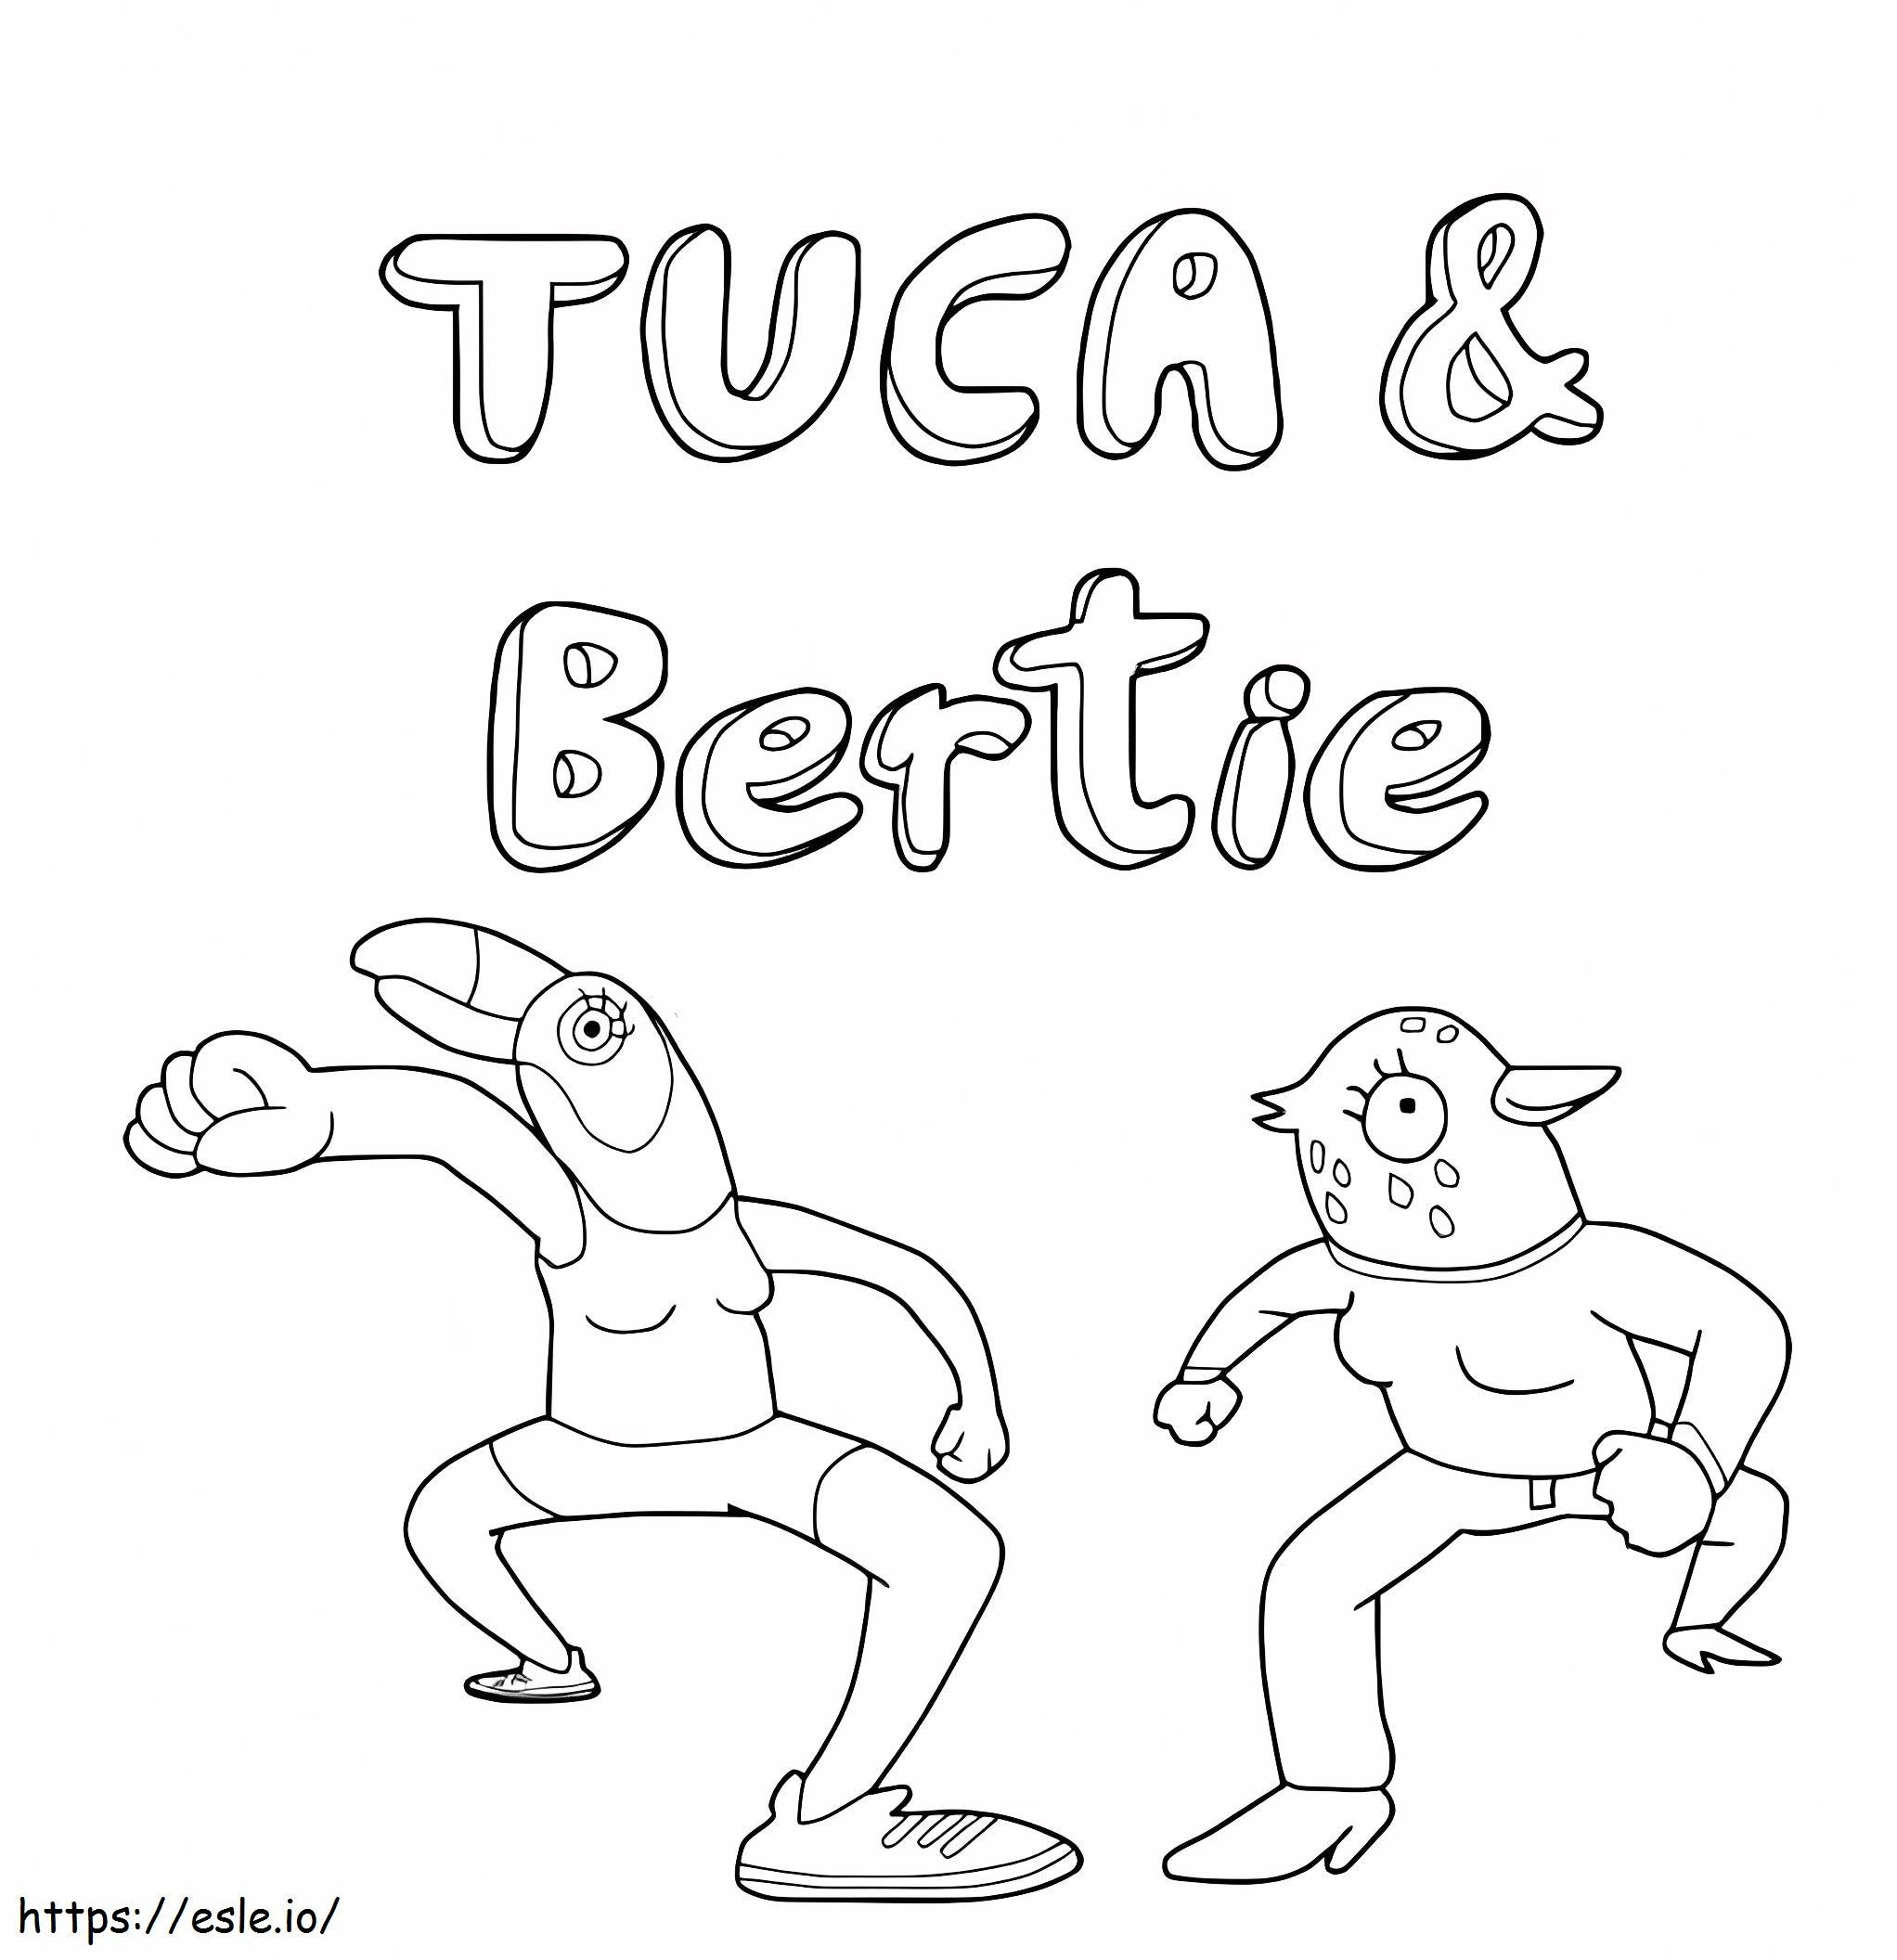 Grappige Tuca en Bertie kleurplaat kleurplaat